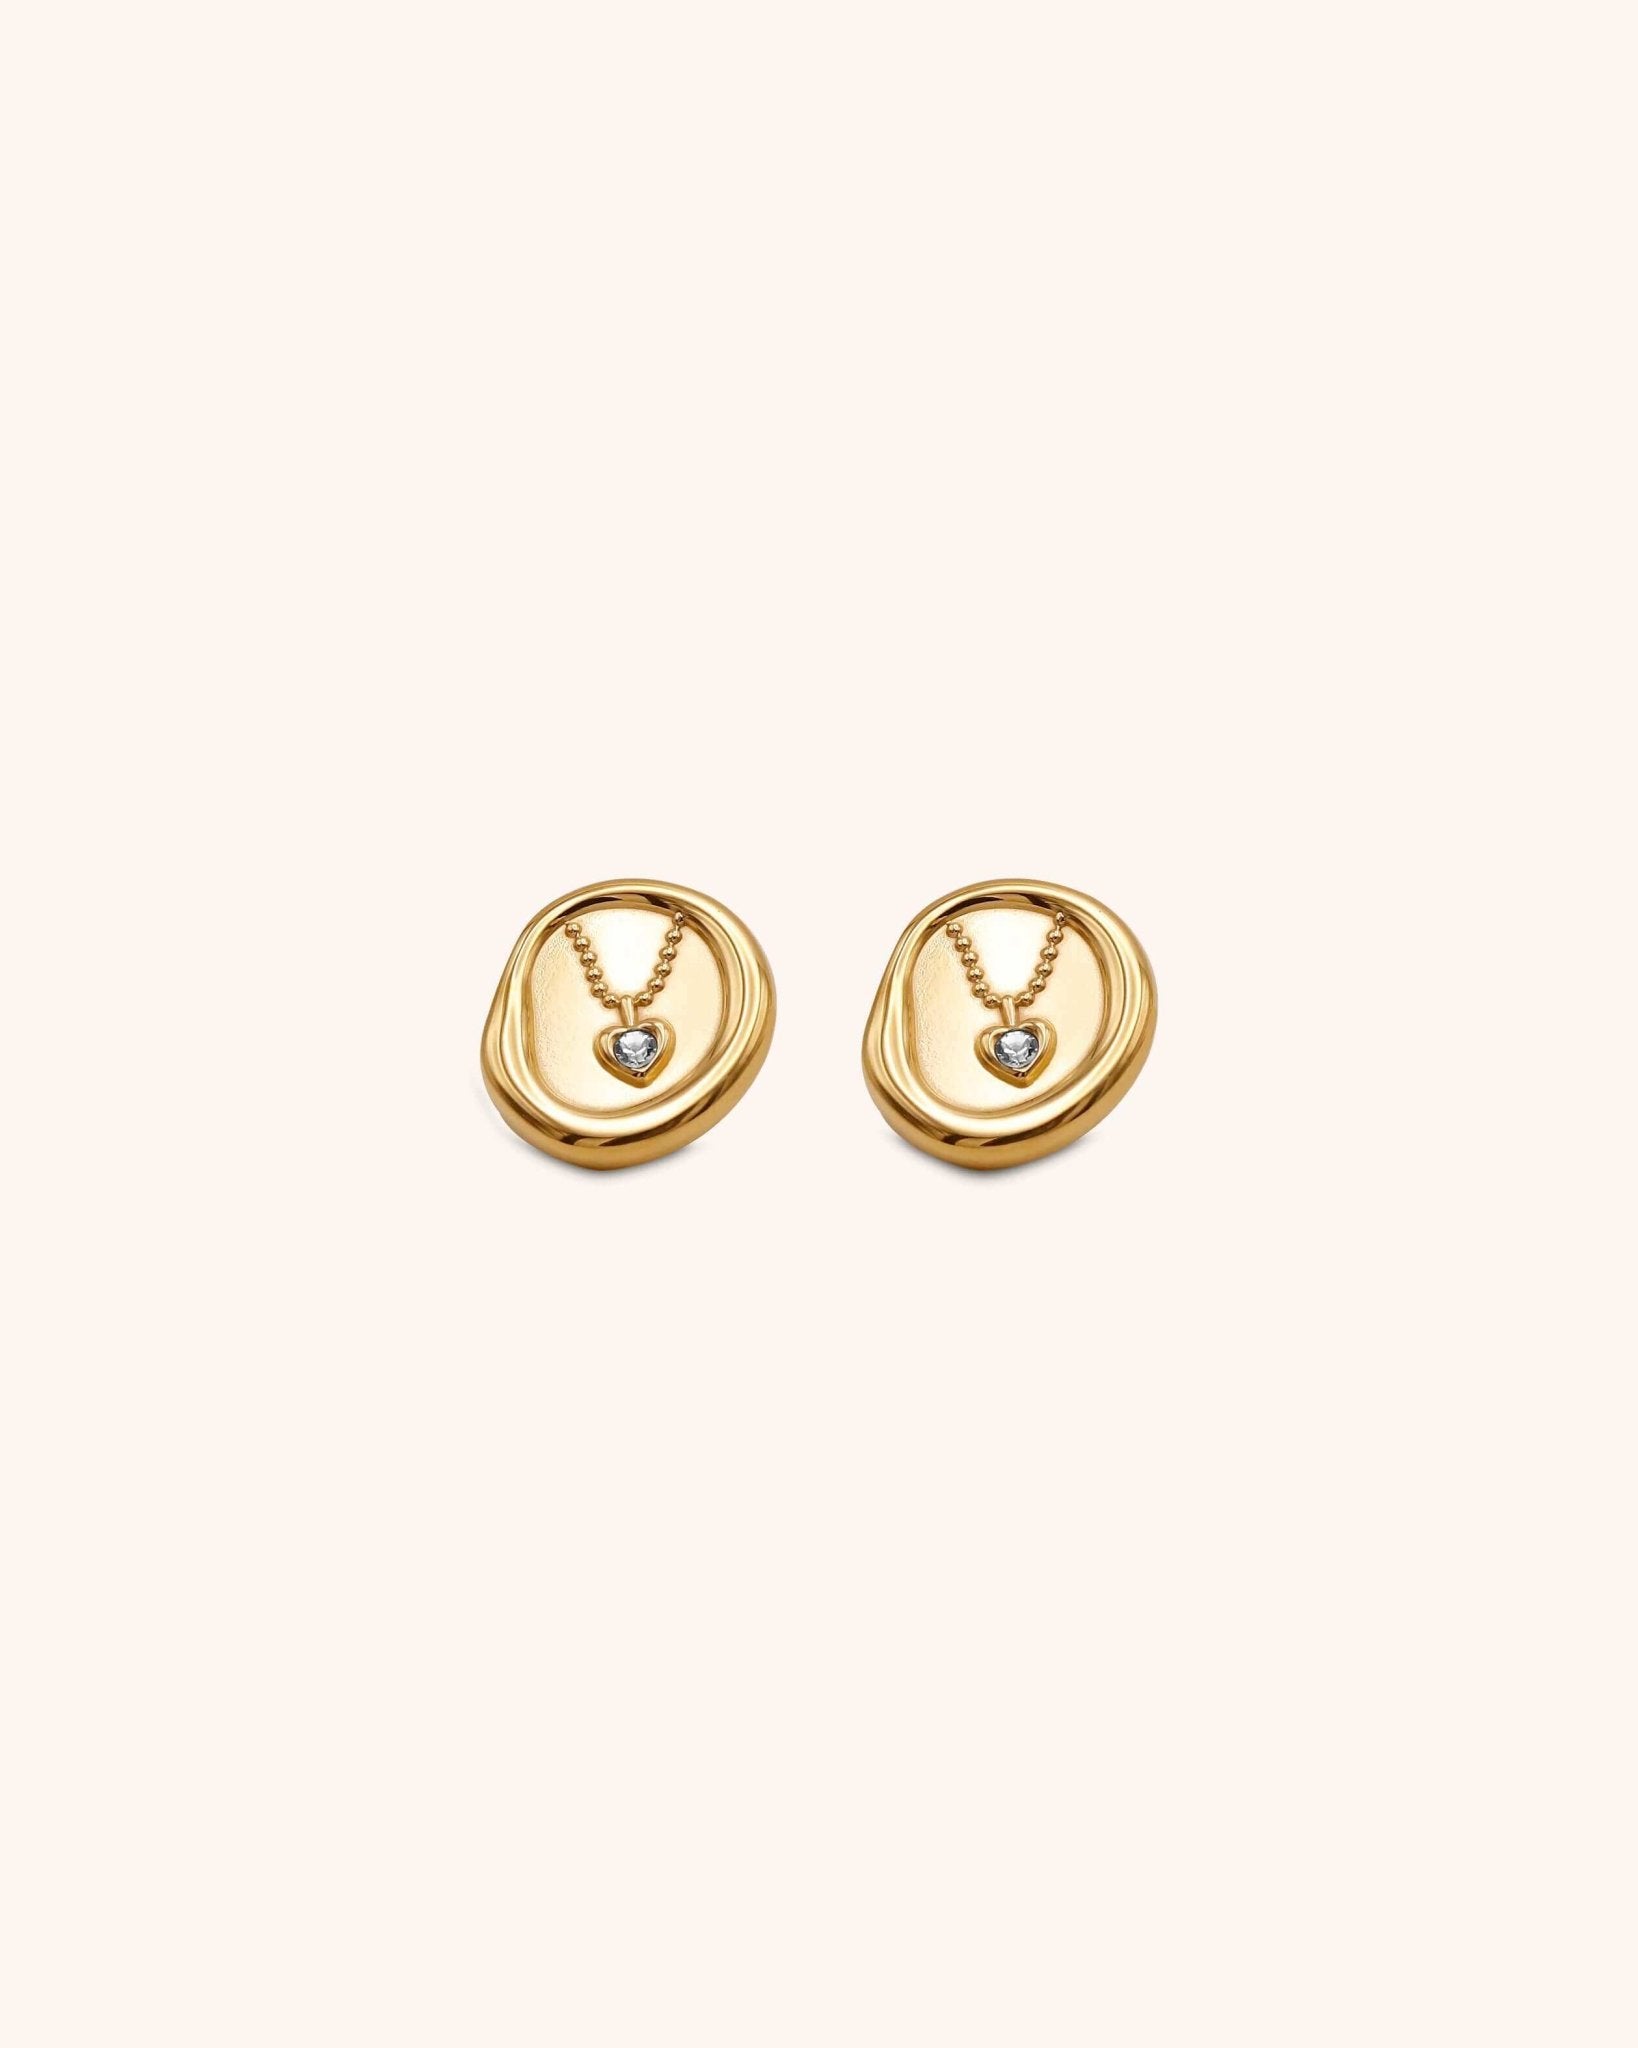 Oval Zircon Heart Stud Earring | Stainless Steel - Oia Boutique